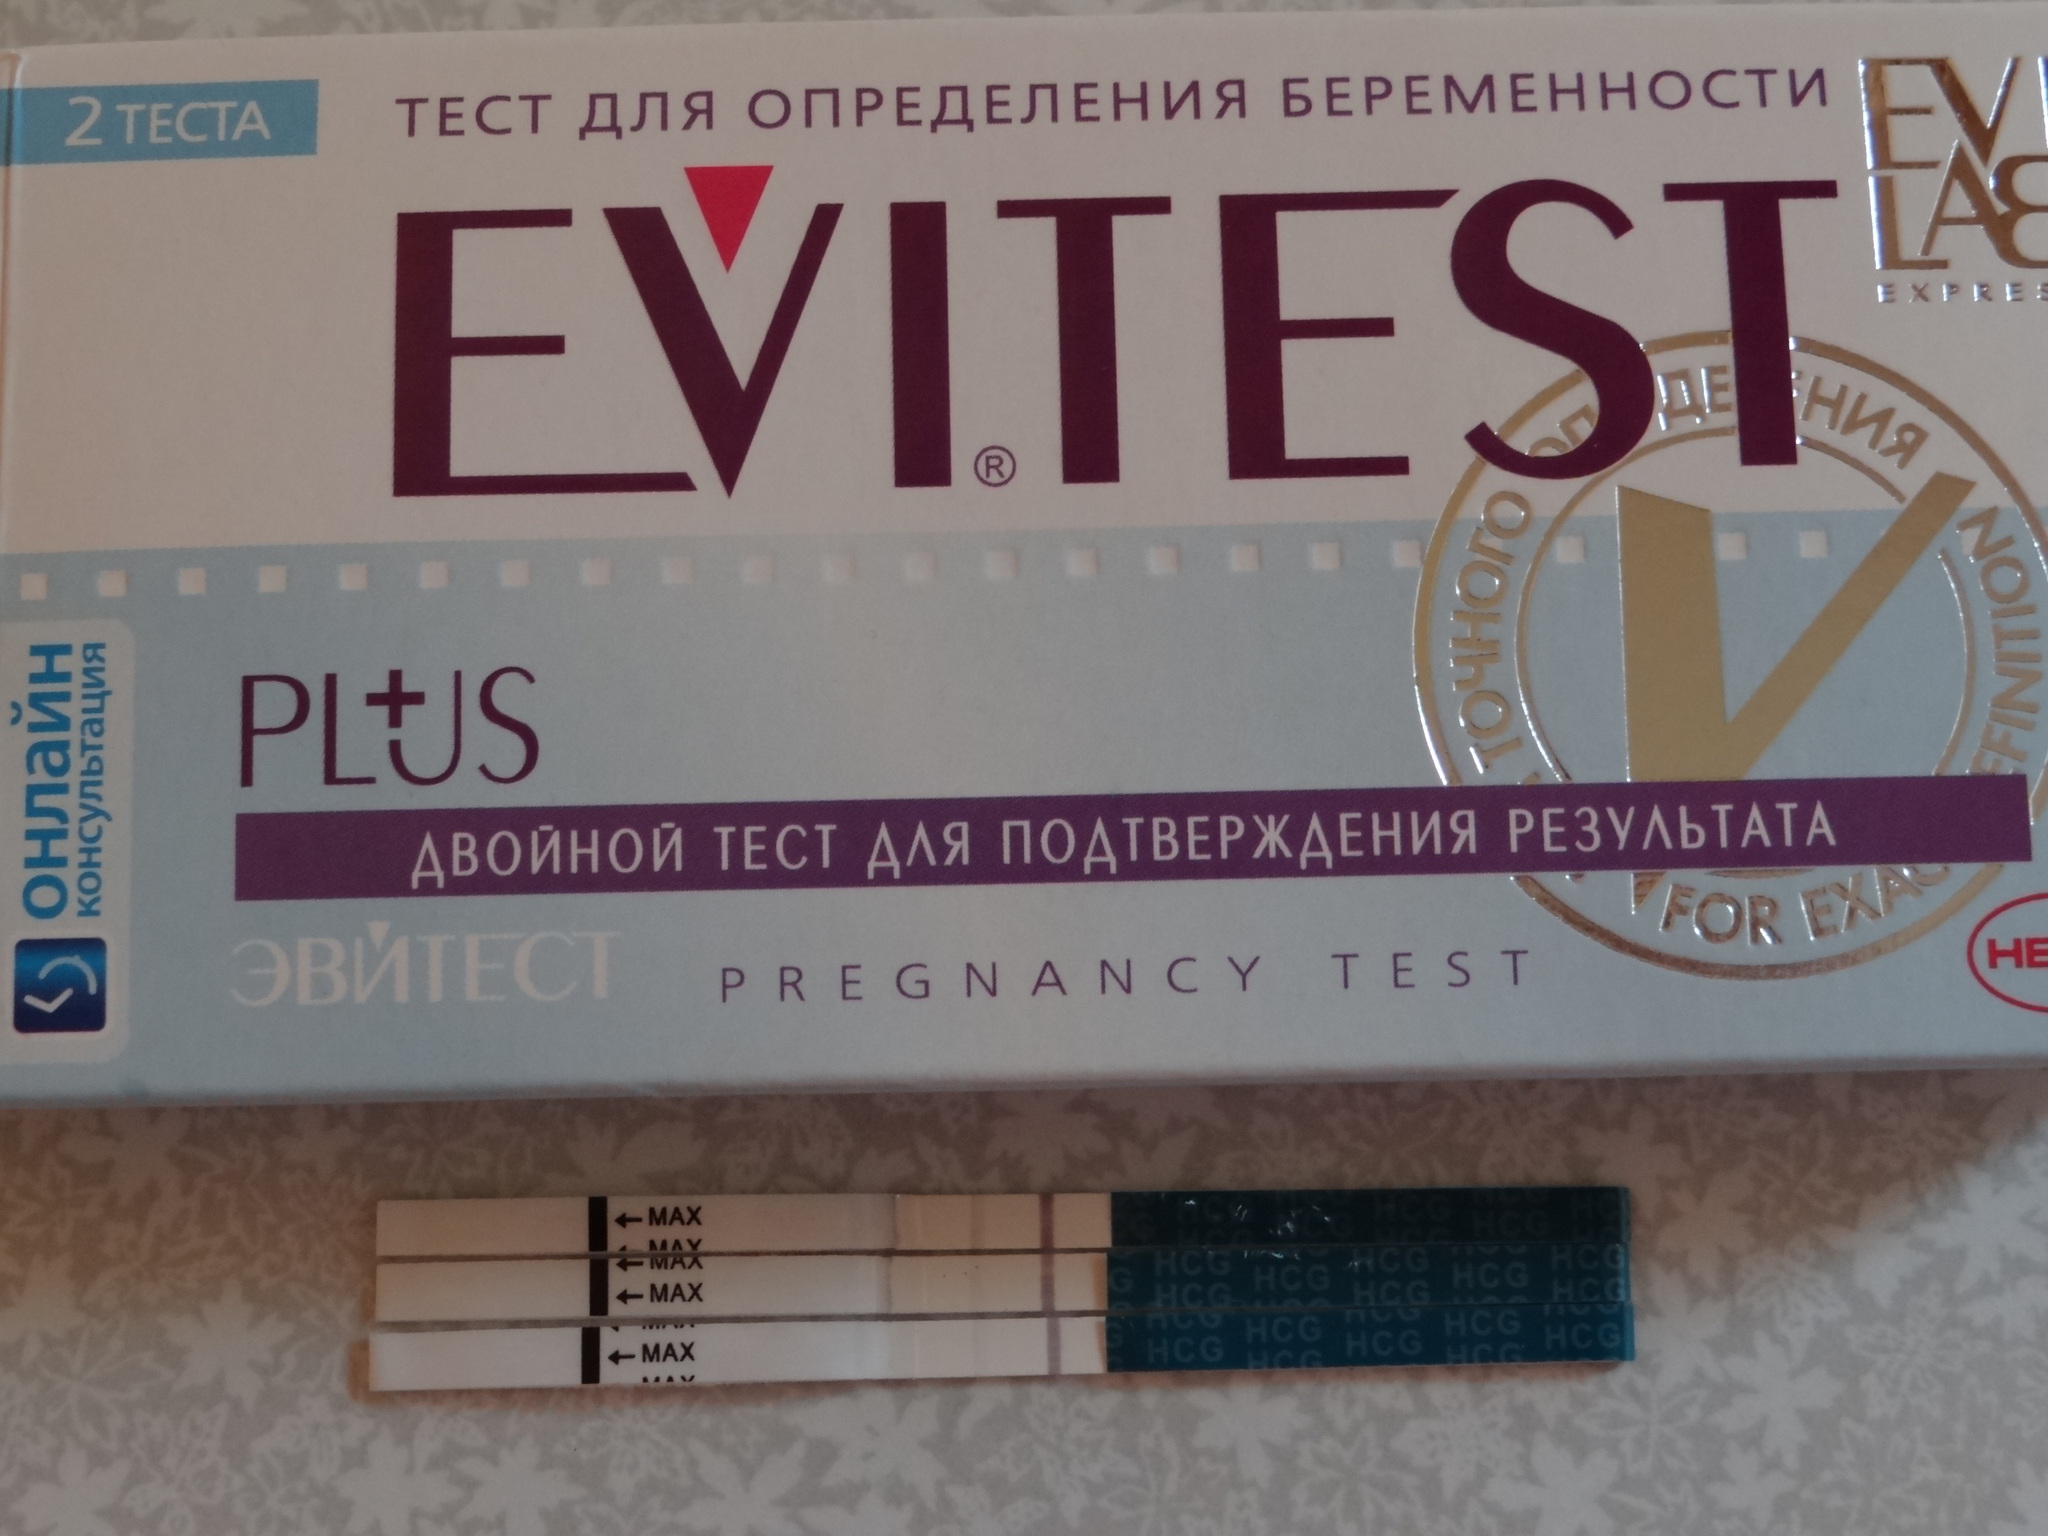 Верные тесты на беременность. Тест для определения беременности на ранних сроках до задержки. Самый точный тест на беременность. Самый хороший тест на беременность. Самый качественный тест на беременность.